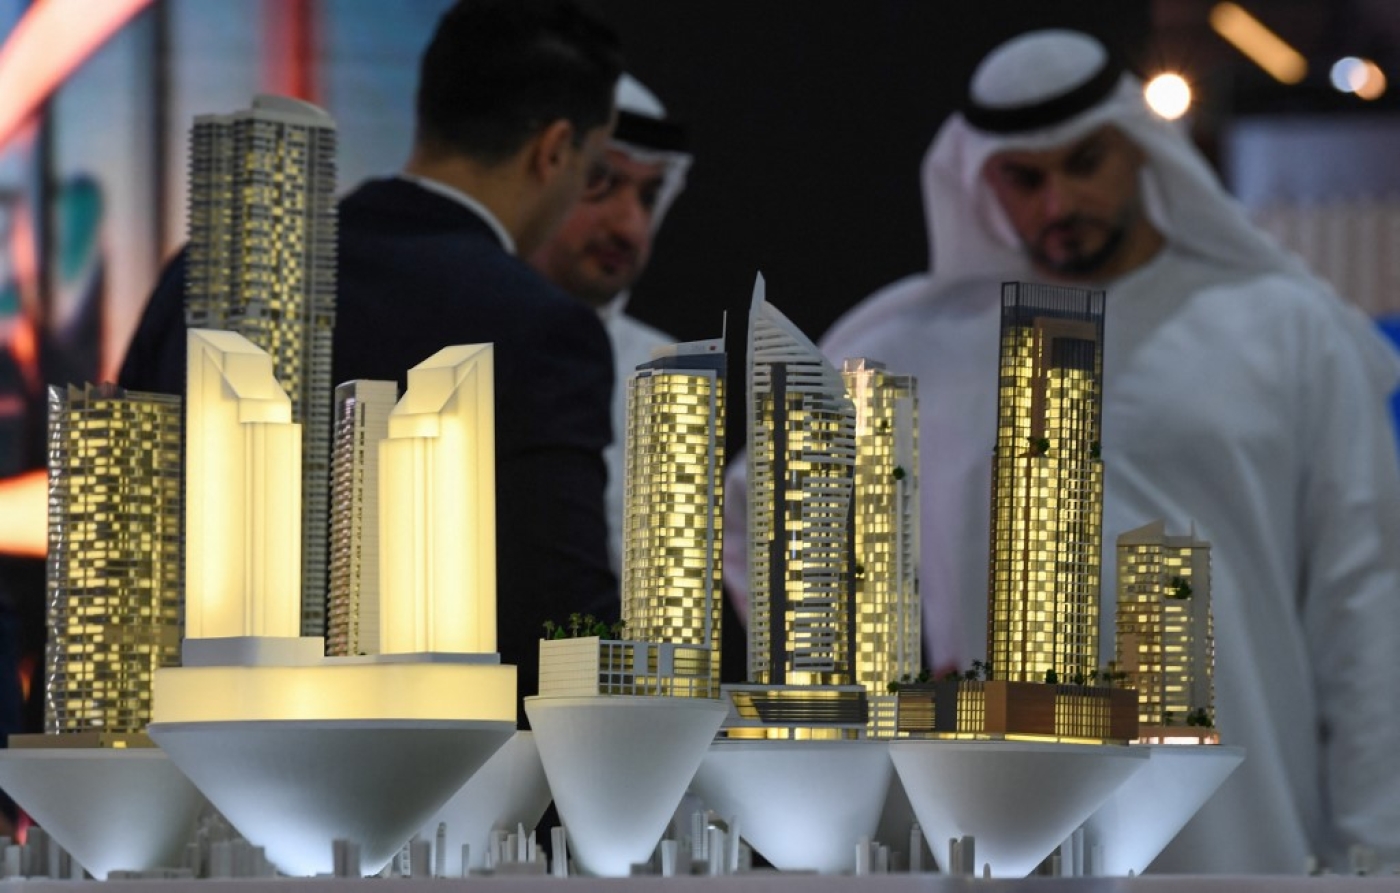 Exposition sur les investissements immobiliers au World Trade Center de Dubaï, le 25 septembre 2019 (AFP/Karim Sahib)